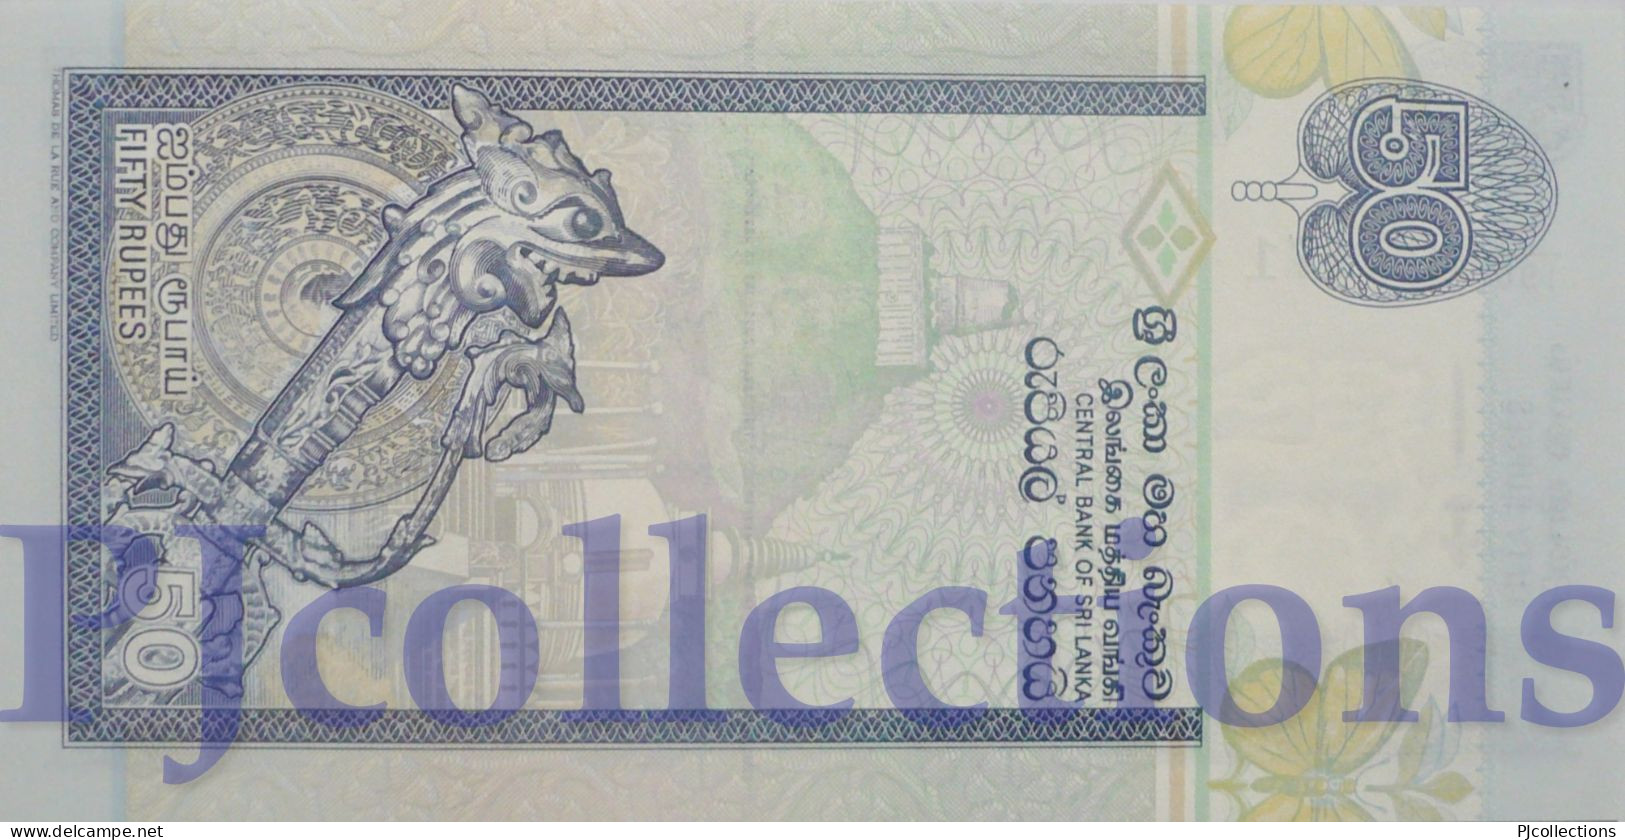 SRI LANKA 50 RUPEES 2004 PICK 110c UNC LOW & GOOD SERIAL NUMBER "007171" - Sri Lanka